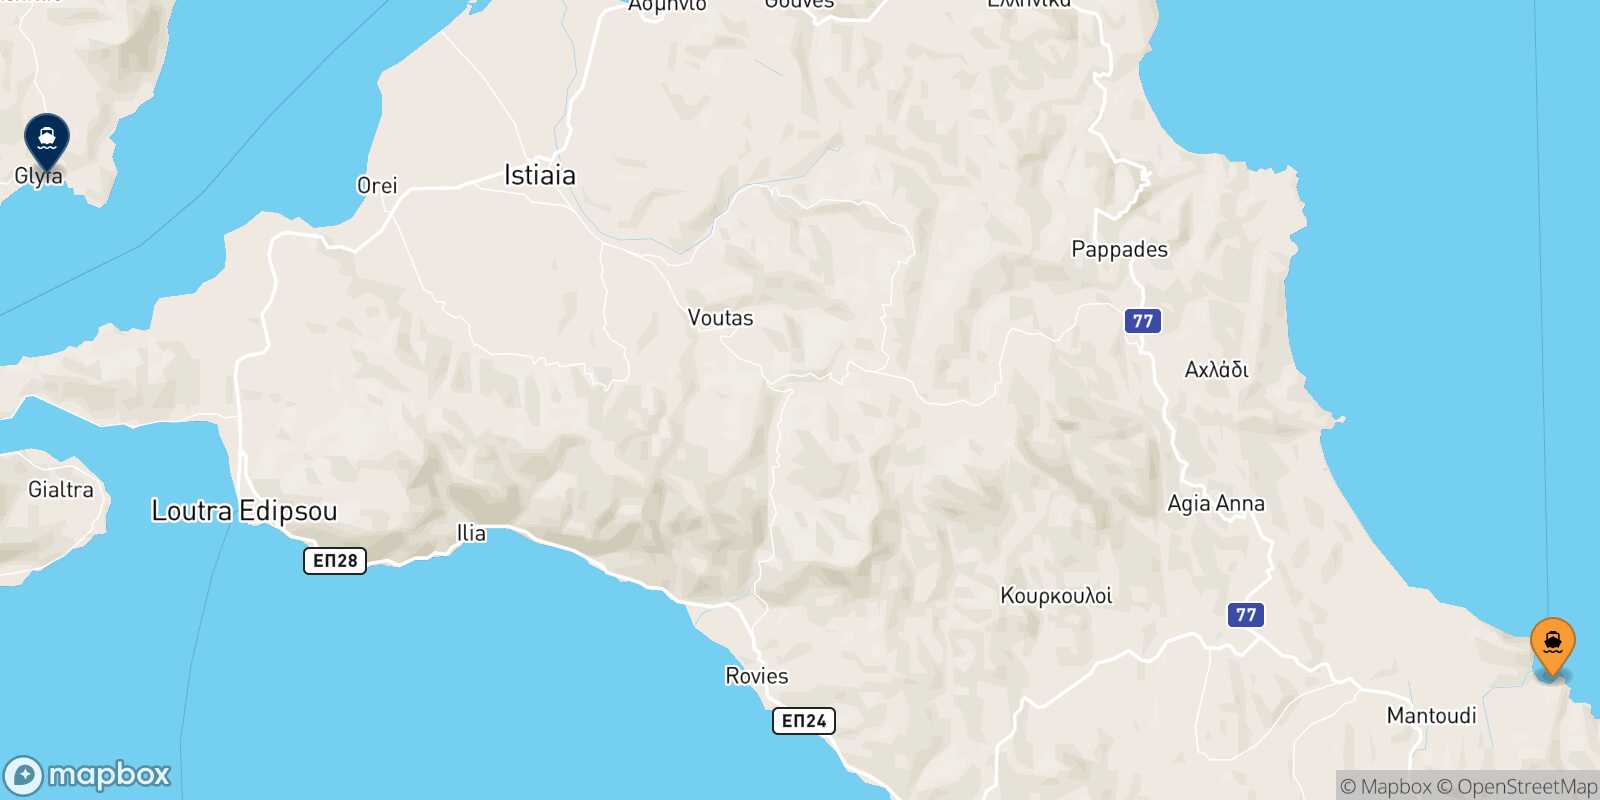 Mantoudi (Evia) Glyfa route map